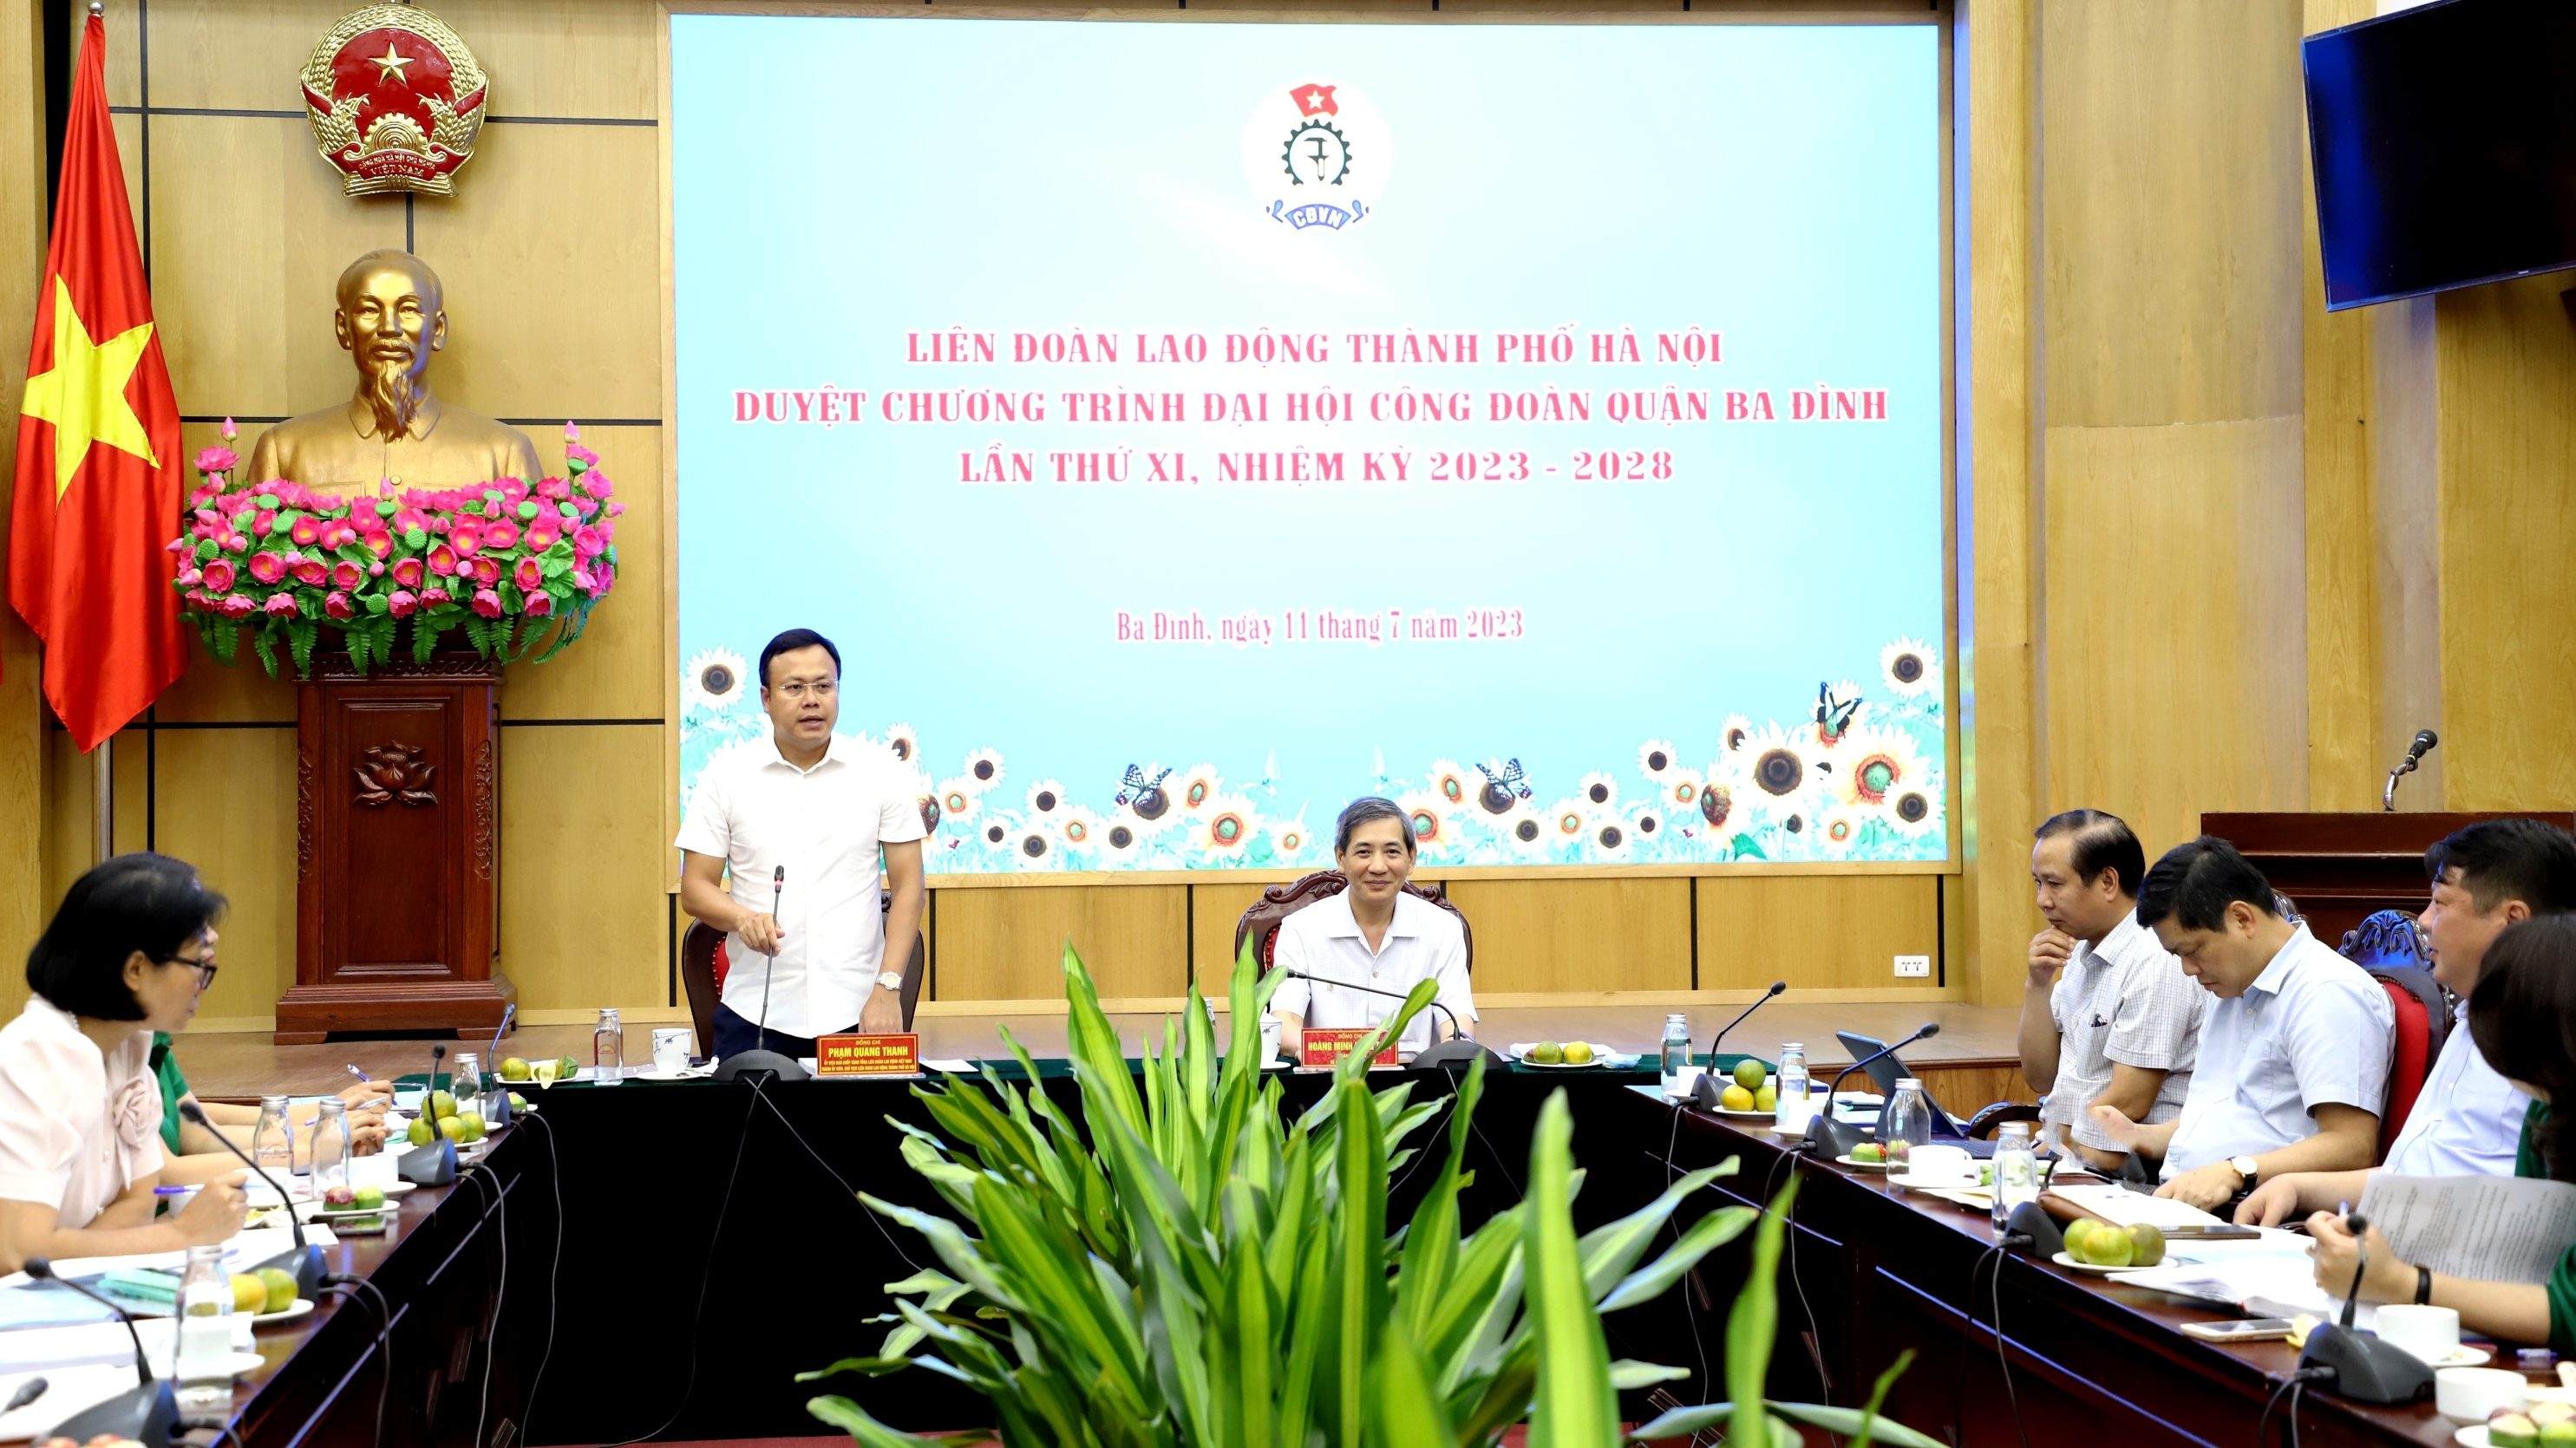 Lãnh đạo LĐLĐ thành phố Hà Nội duyệt chương trình Đại hội Công đoàn quận Ba Đình lần thứ XI